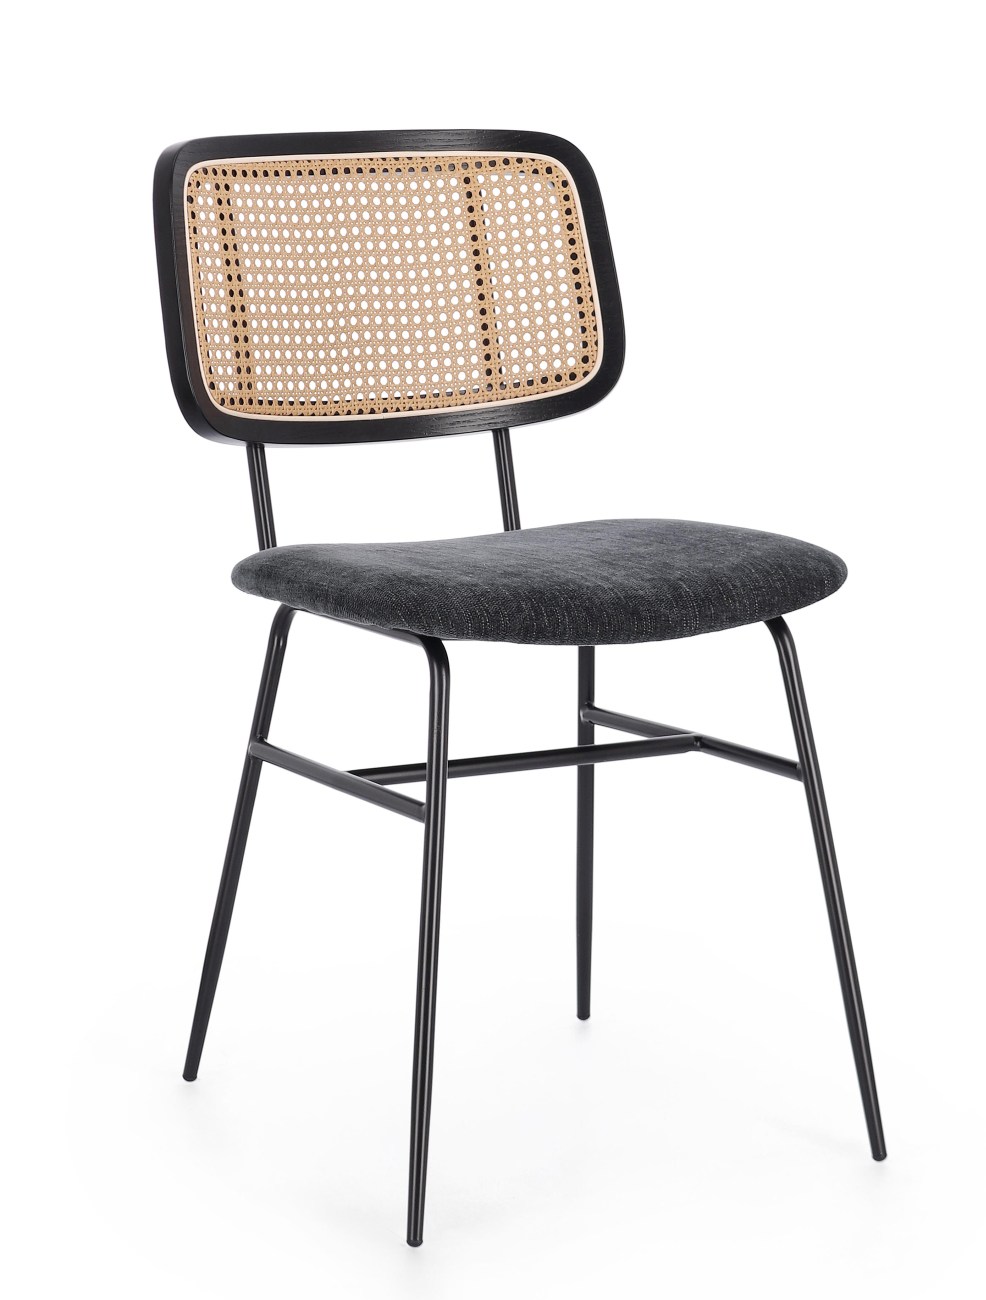 Der Esszimmerstuhl Glenna überzeugt mit seinem modernen Stil. Gefertigt wurde er aus Stoff, welcher einen dunkelgrauen Farbton besitzt. Das Gestell ist aus Metall und hat eine schwarze Farbe. Der Stuhl besitzt eine Sitzhöhe von 48 cm.